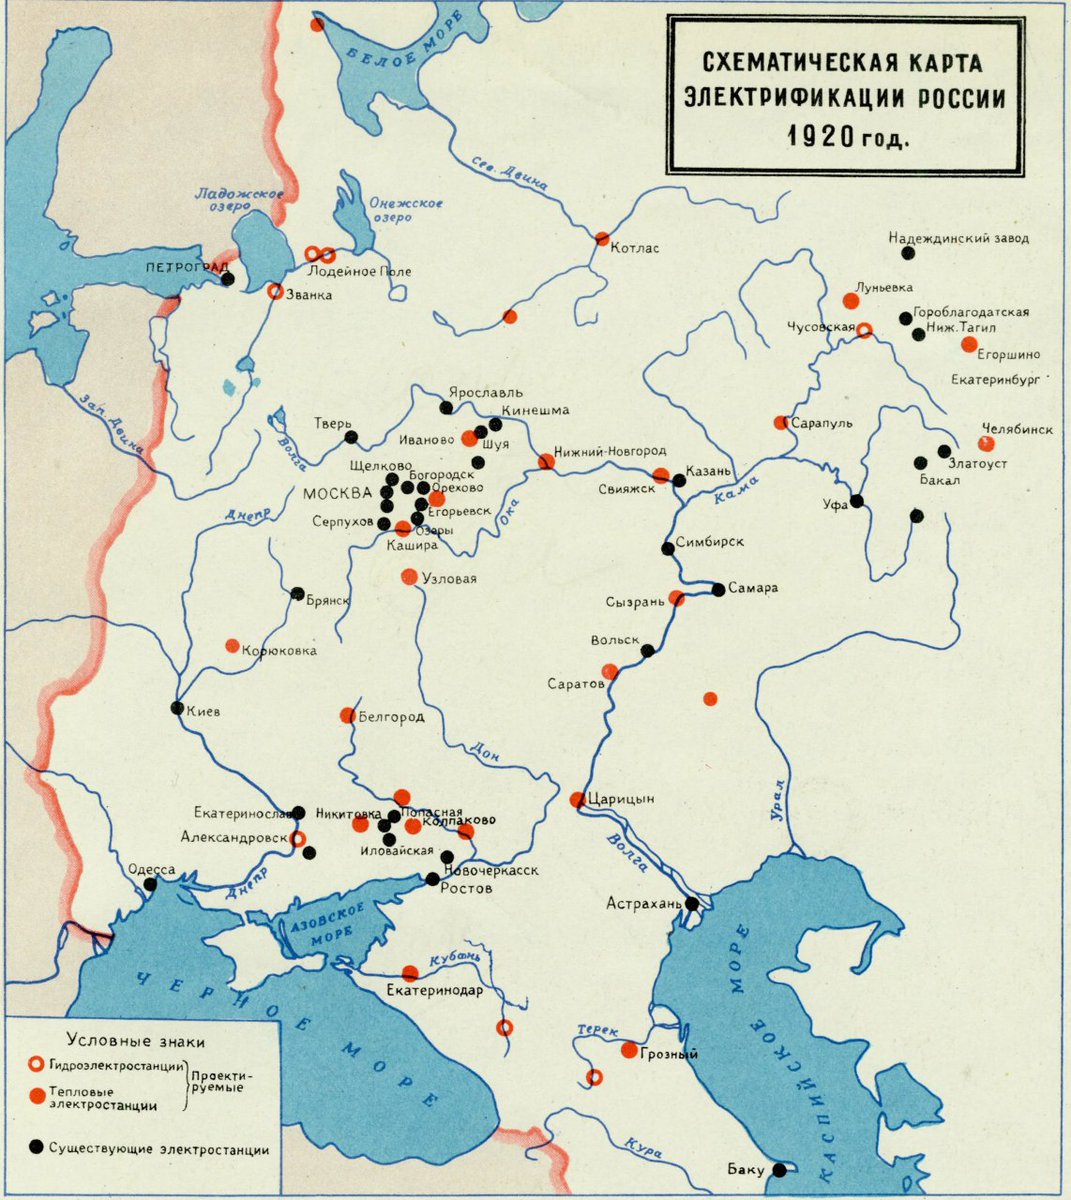 Il progetto di elettrificazione della Russia. 1920 Non esiste l’Ucraina
👍🏽